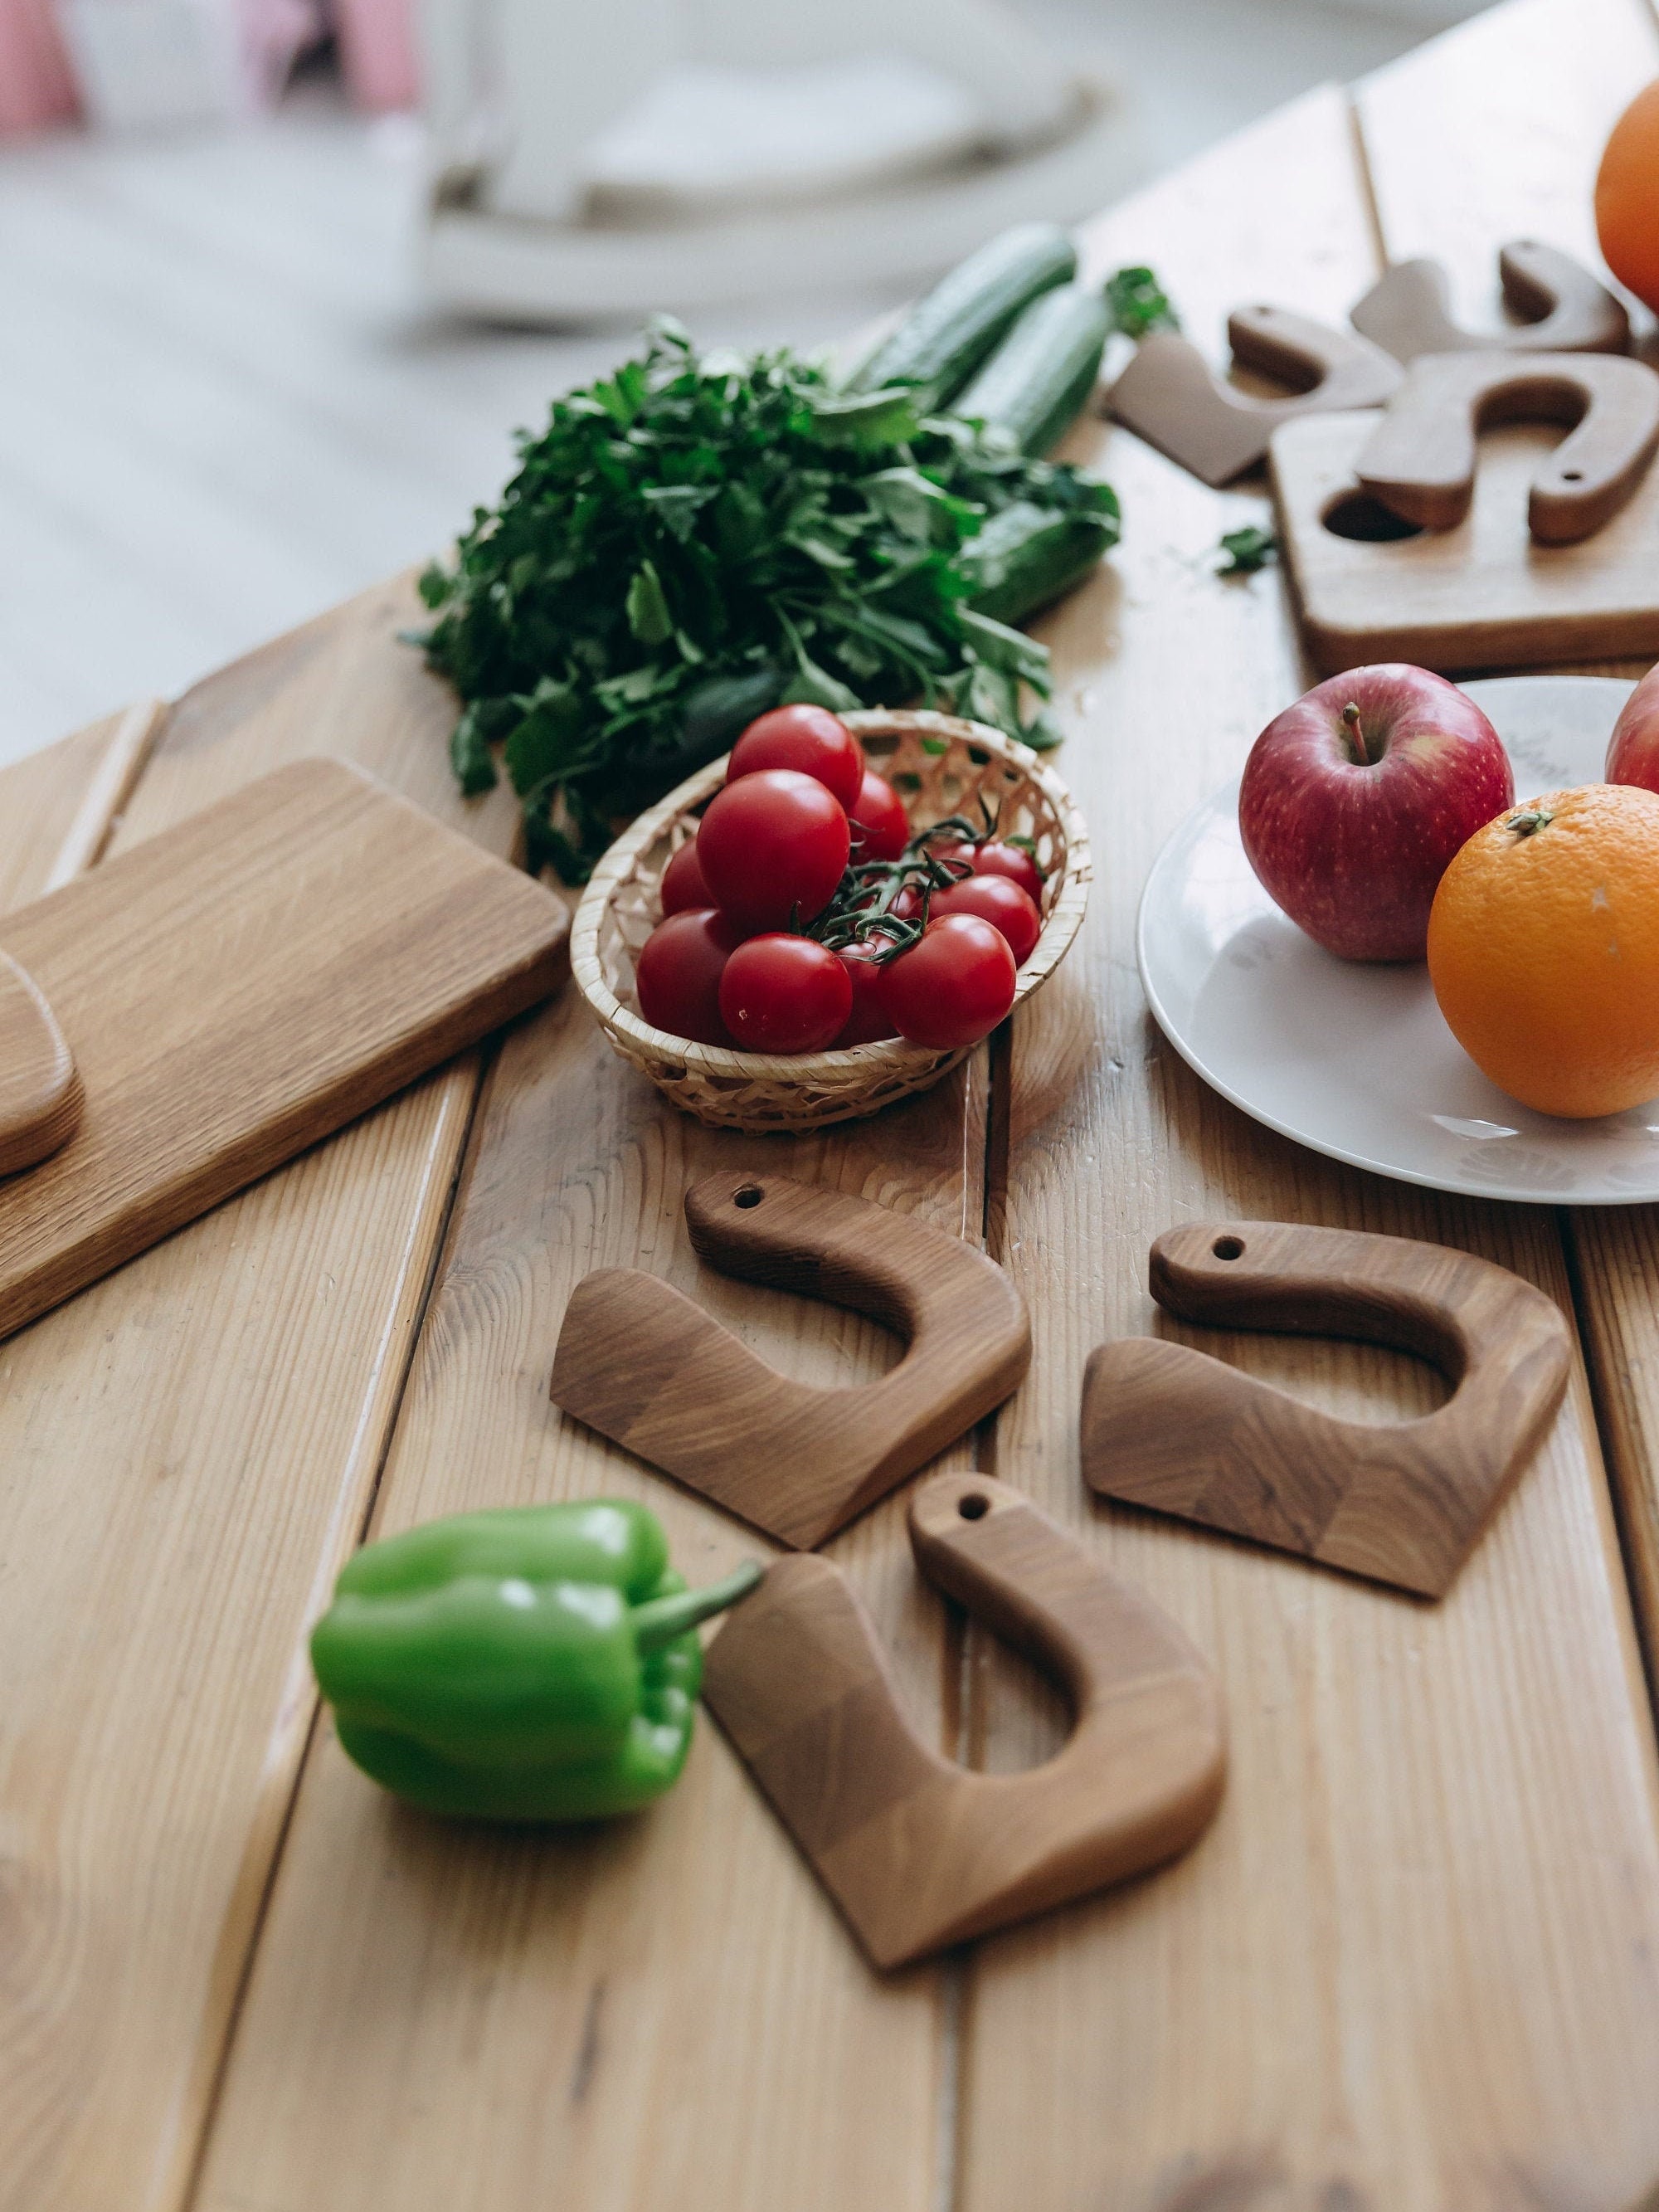 Cuchillo de madera seguro para niños utensilios educativos Montessori para  cortar Ehuebsd frutas y verduras juguete de cocina